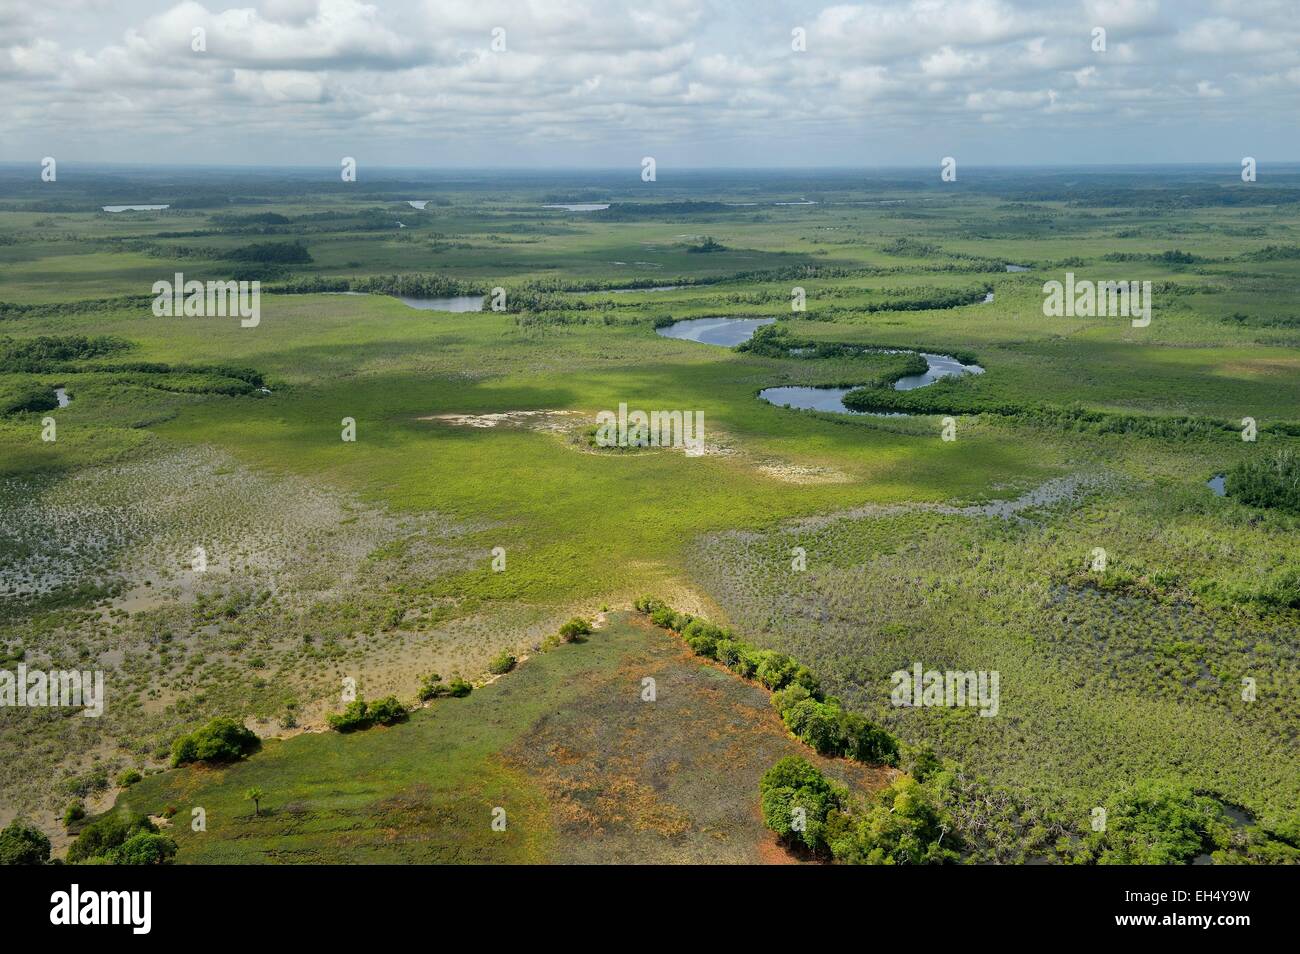 Le Gabon, Ogooue-Maritime, Province du delta du fleuve Ogooué, marais et rivières (vue aérienne) Banque D'Images